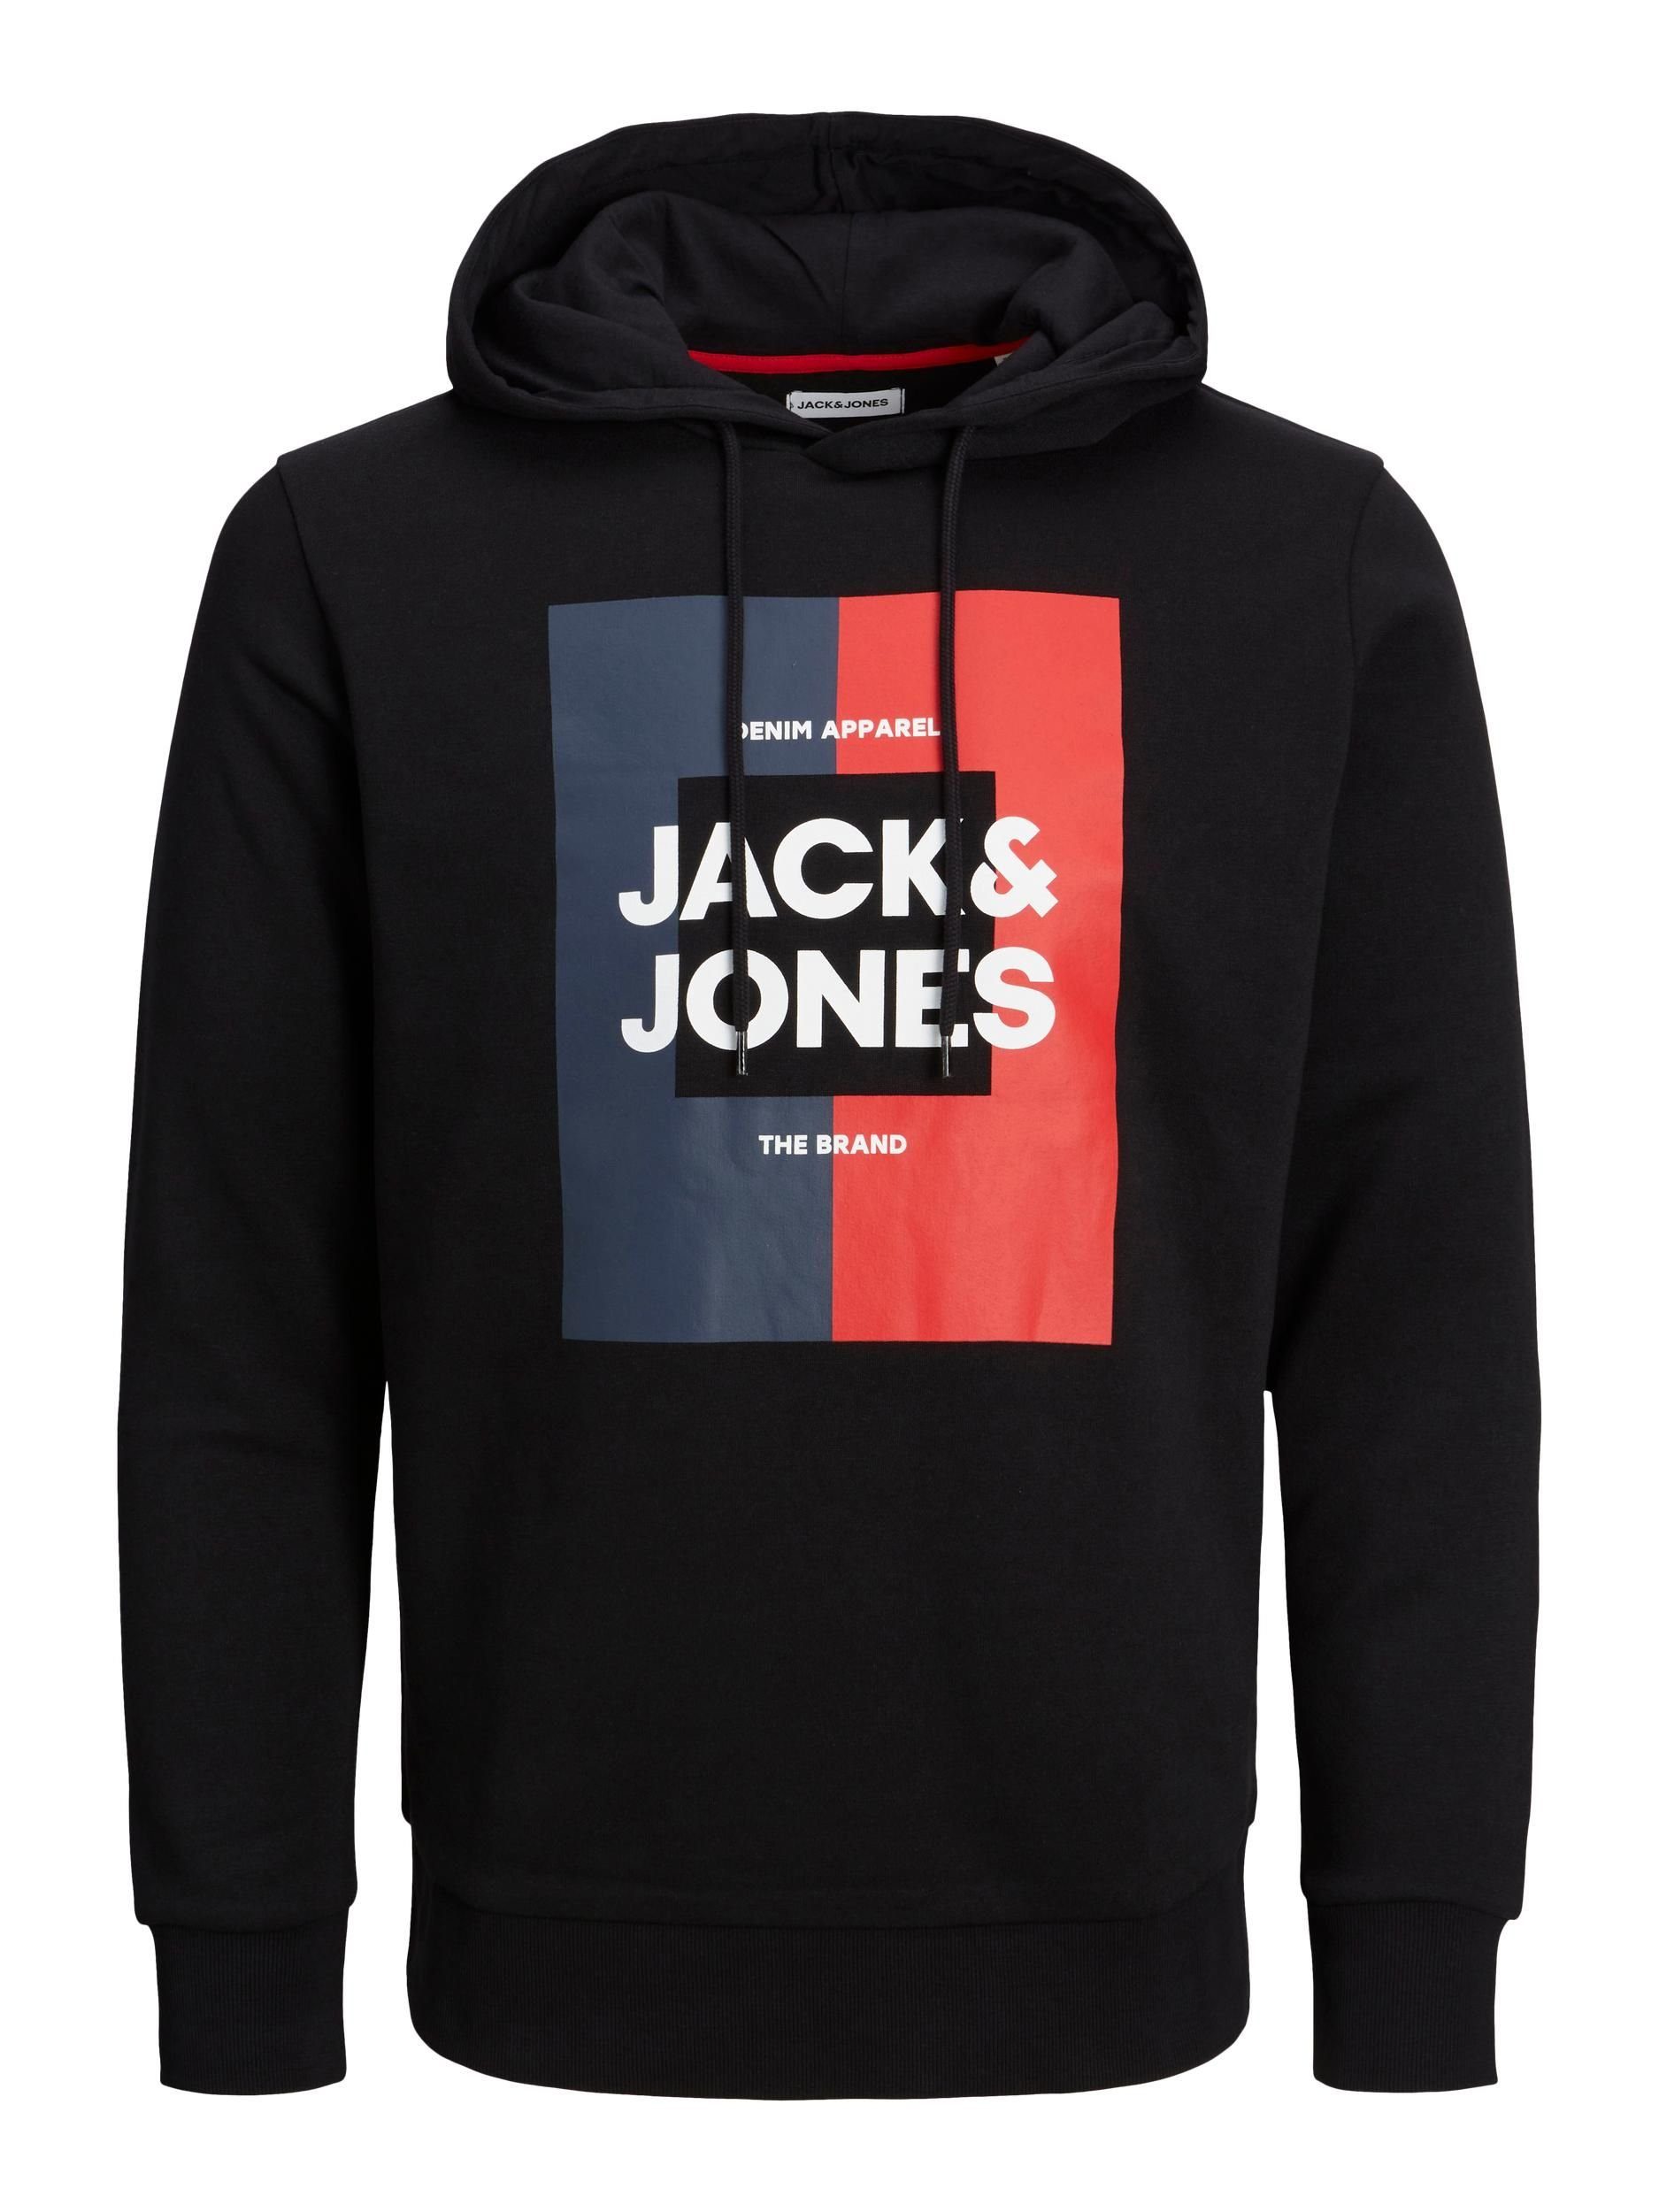 Jones & Jack Sweatshirt